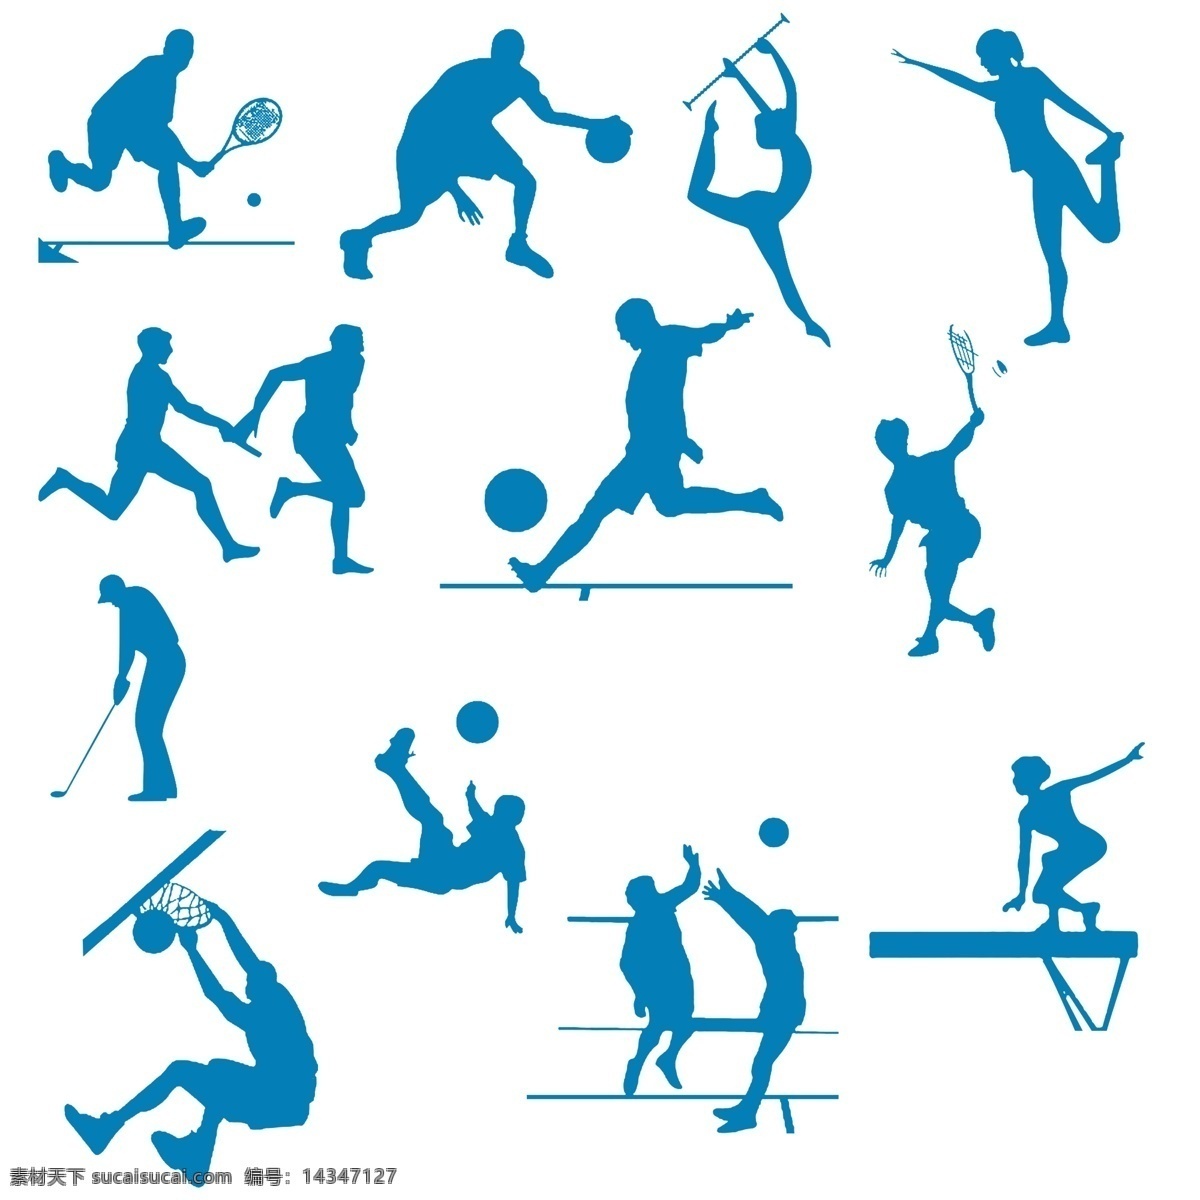 体育项目 体育运动 足球 排球 篮球 体操 高尔夫 羽毛球 网球 源文件 体育剪纸 接力 平衡木 文化艺术